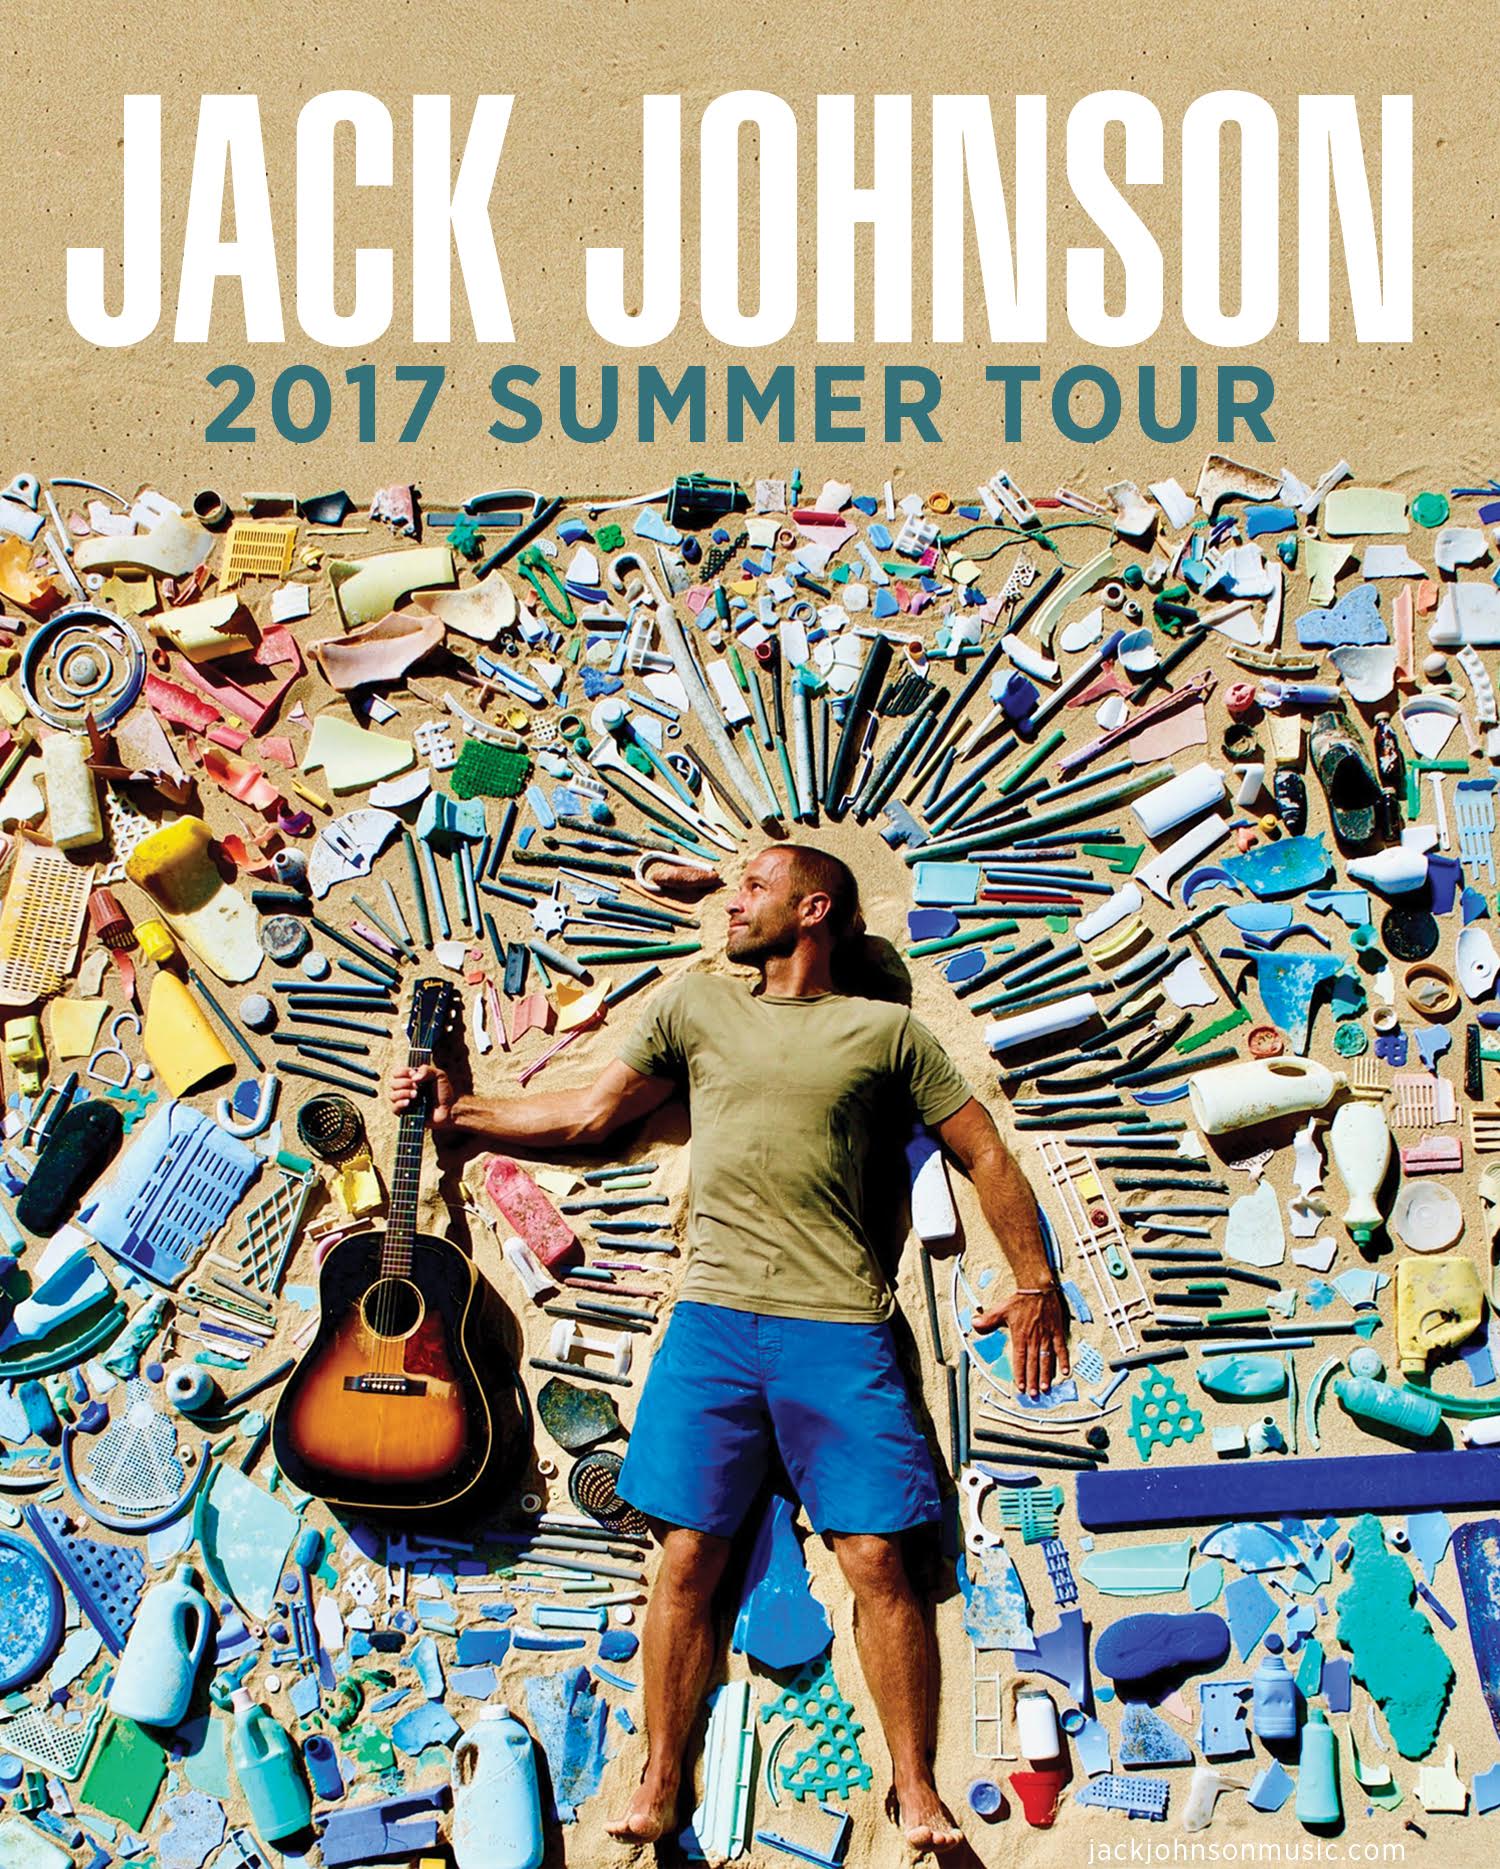 Presale Codes for Jack Johnson Tour